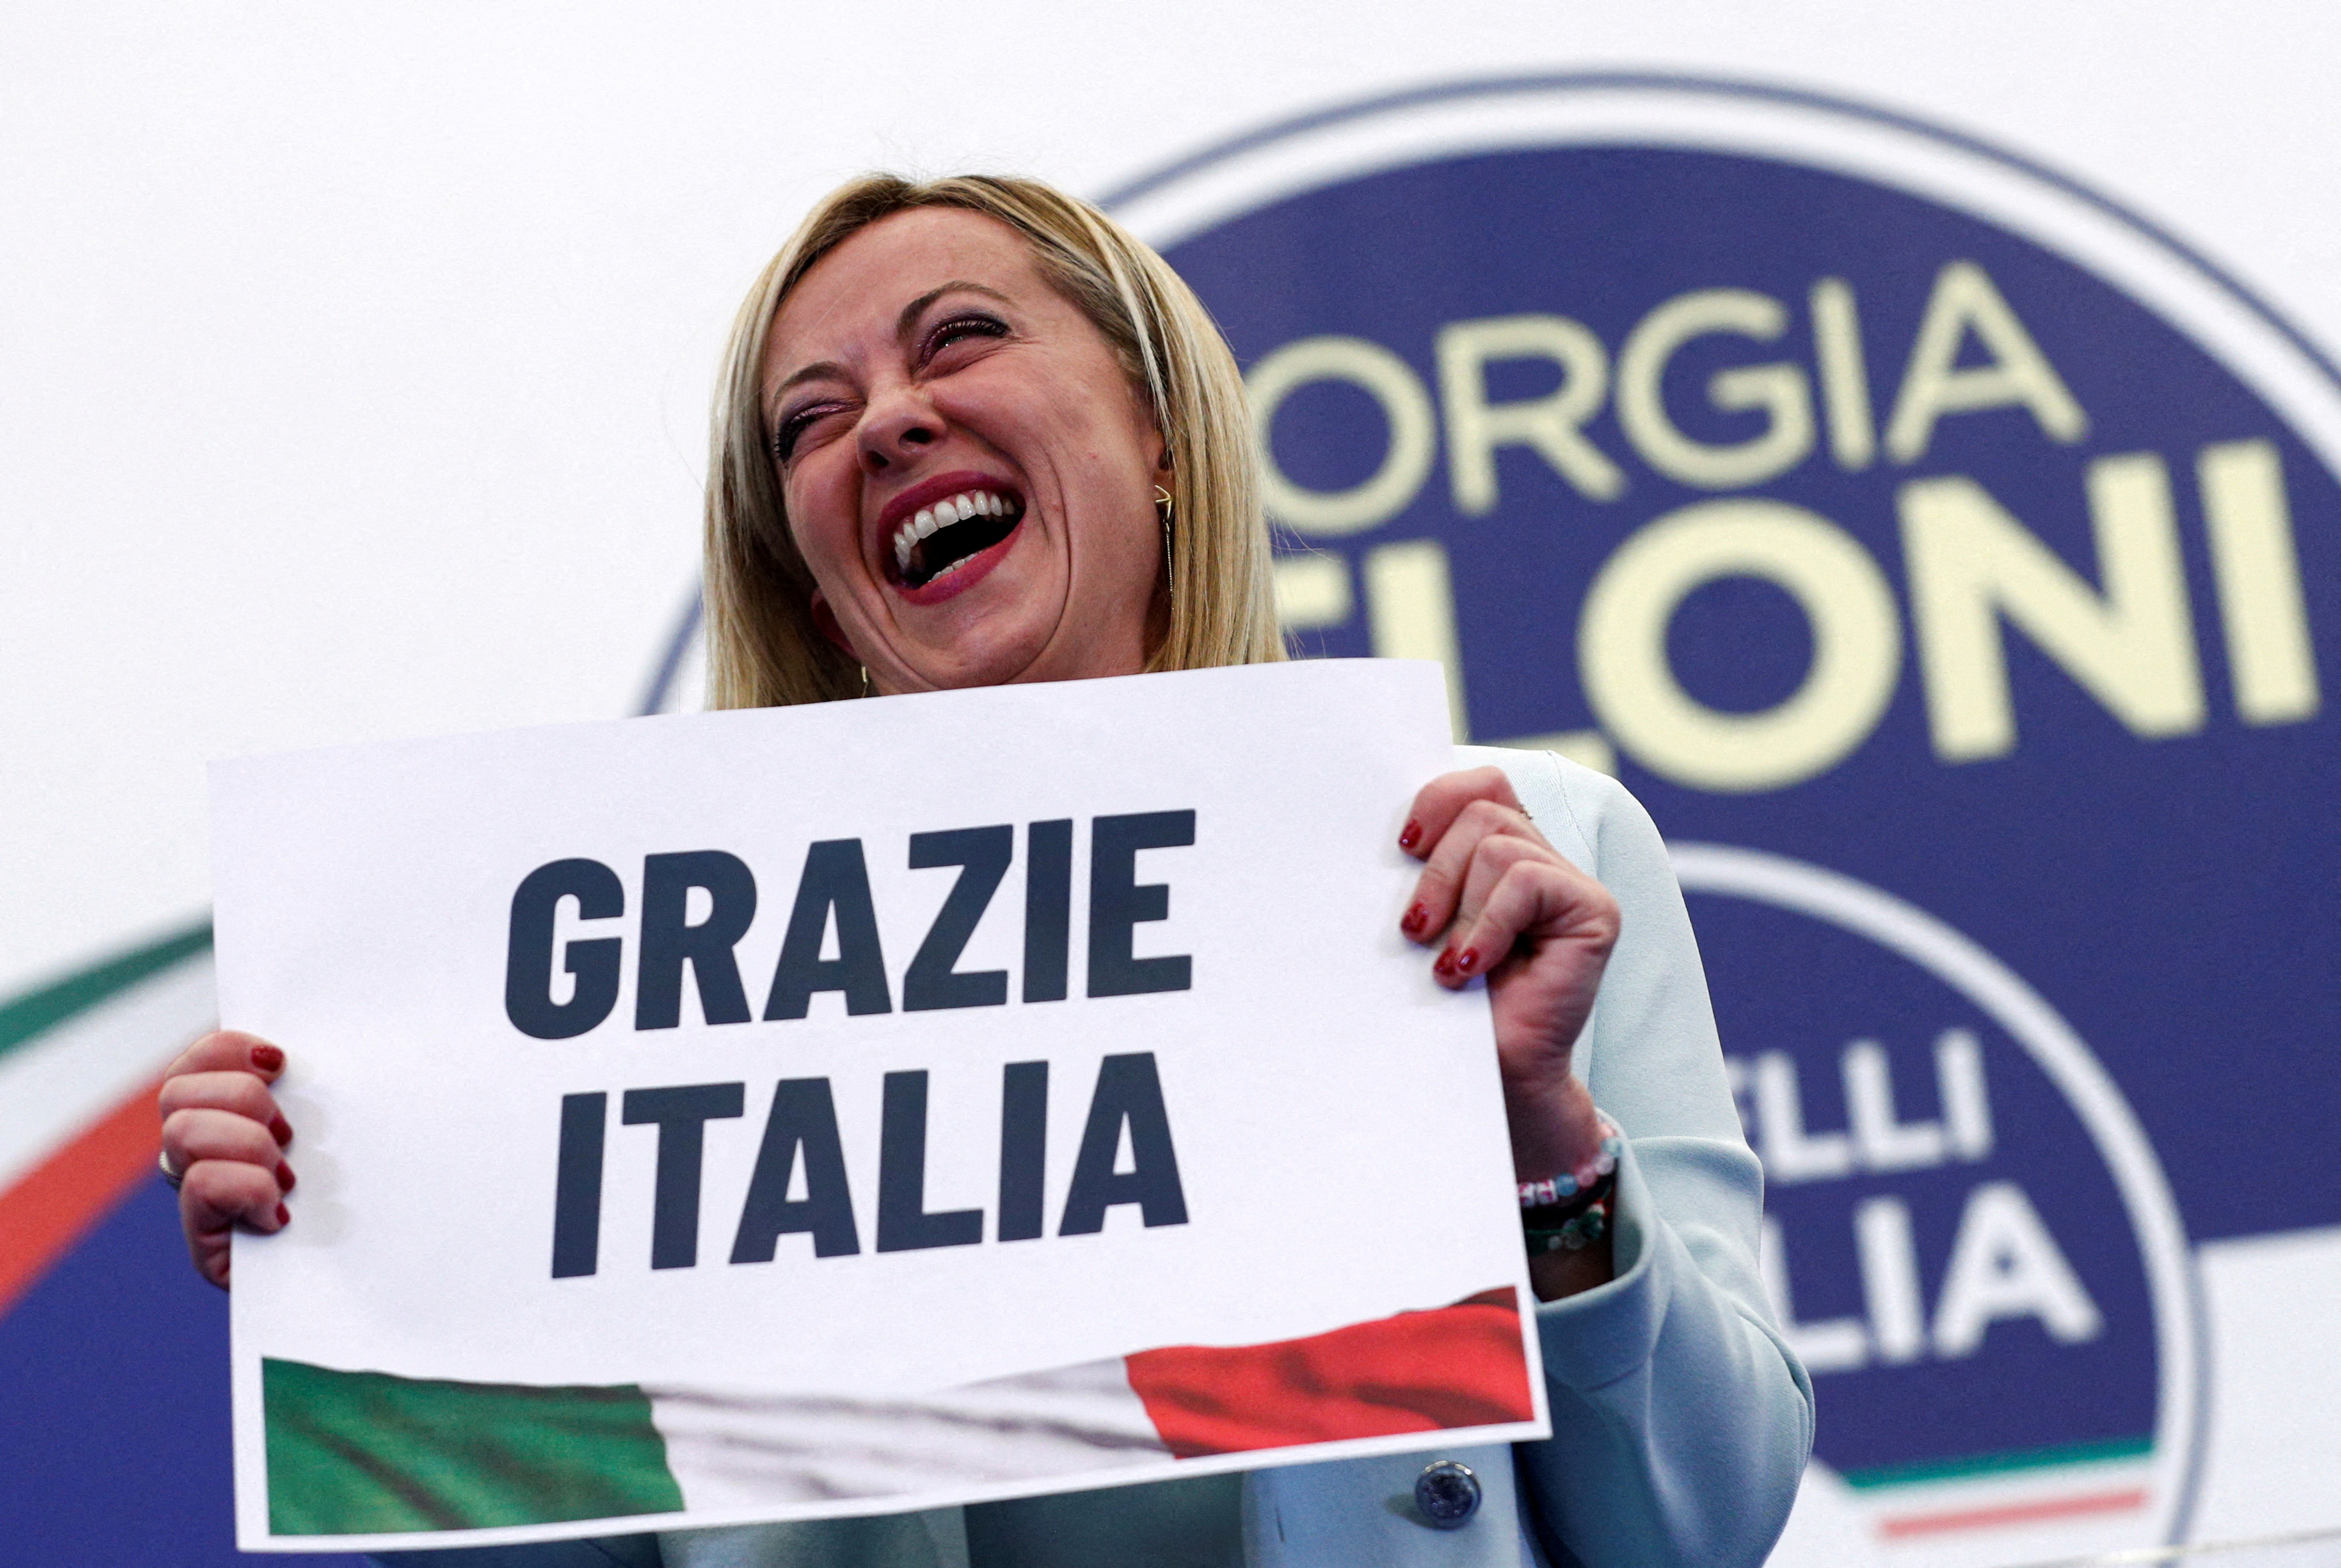 El nuevo gobierno italiano bajo la líder de extrema derecha Giorgia Meloni, expresó este miércoles que Ucrania puede contar con todo su apoyo, en un mensaje dirigido al presidente Volodimir Zelensky